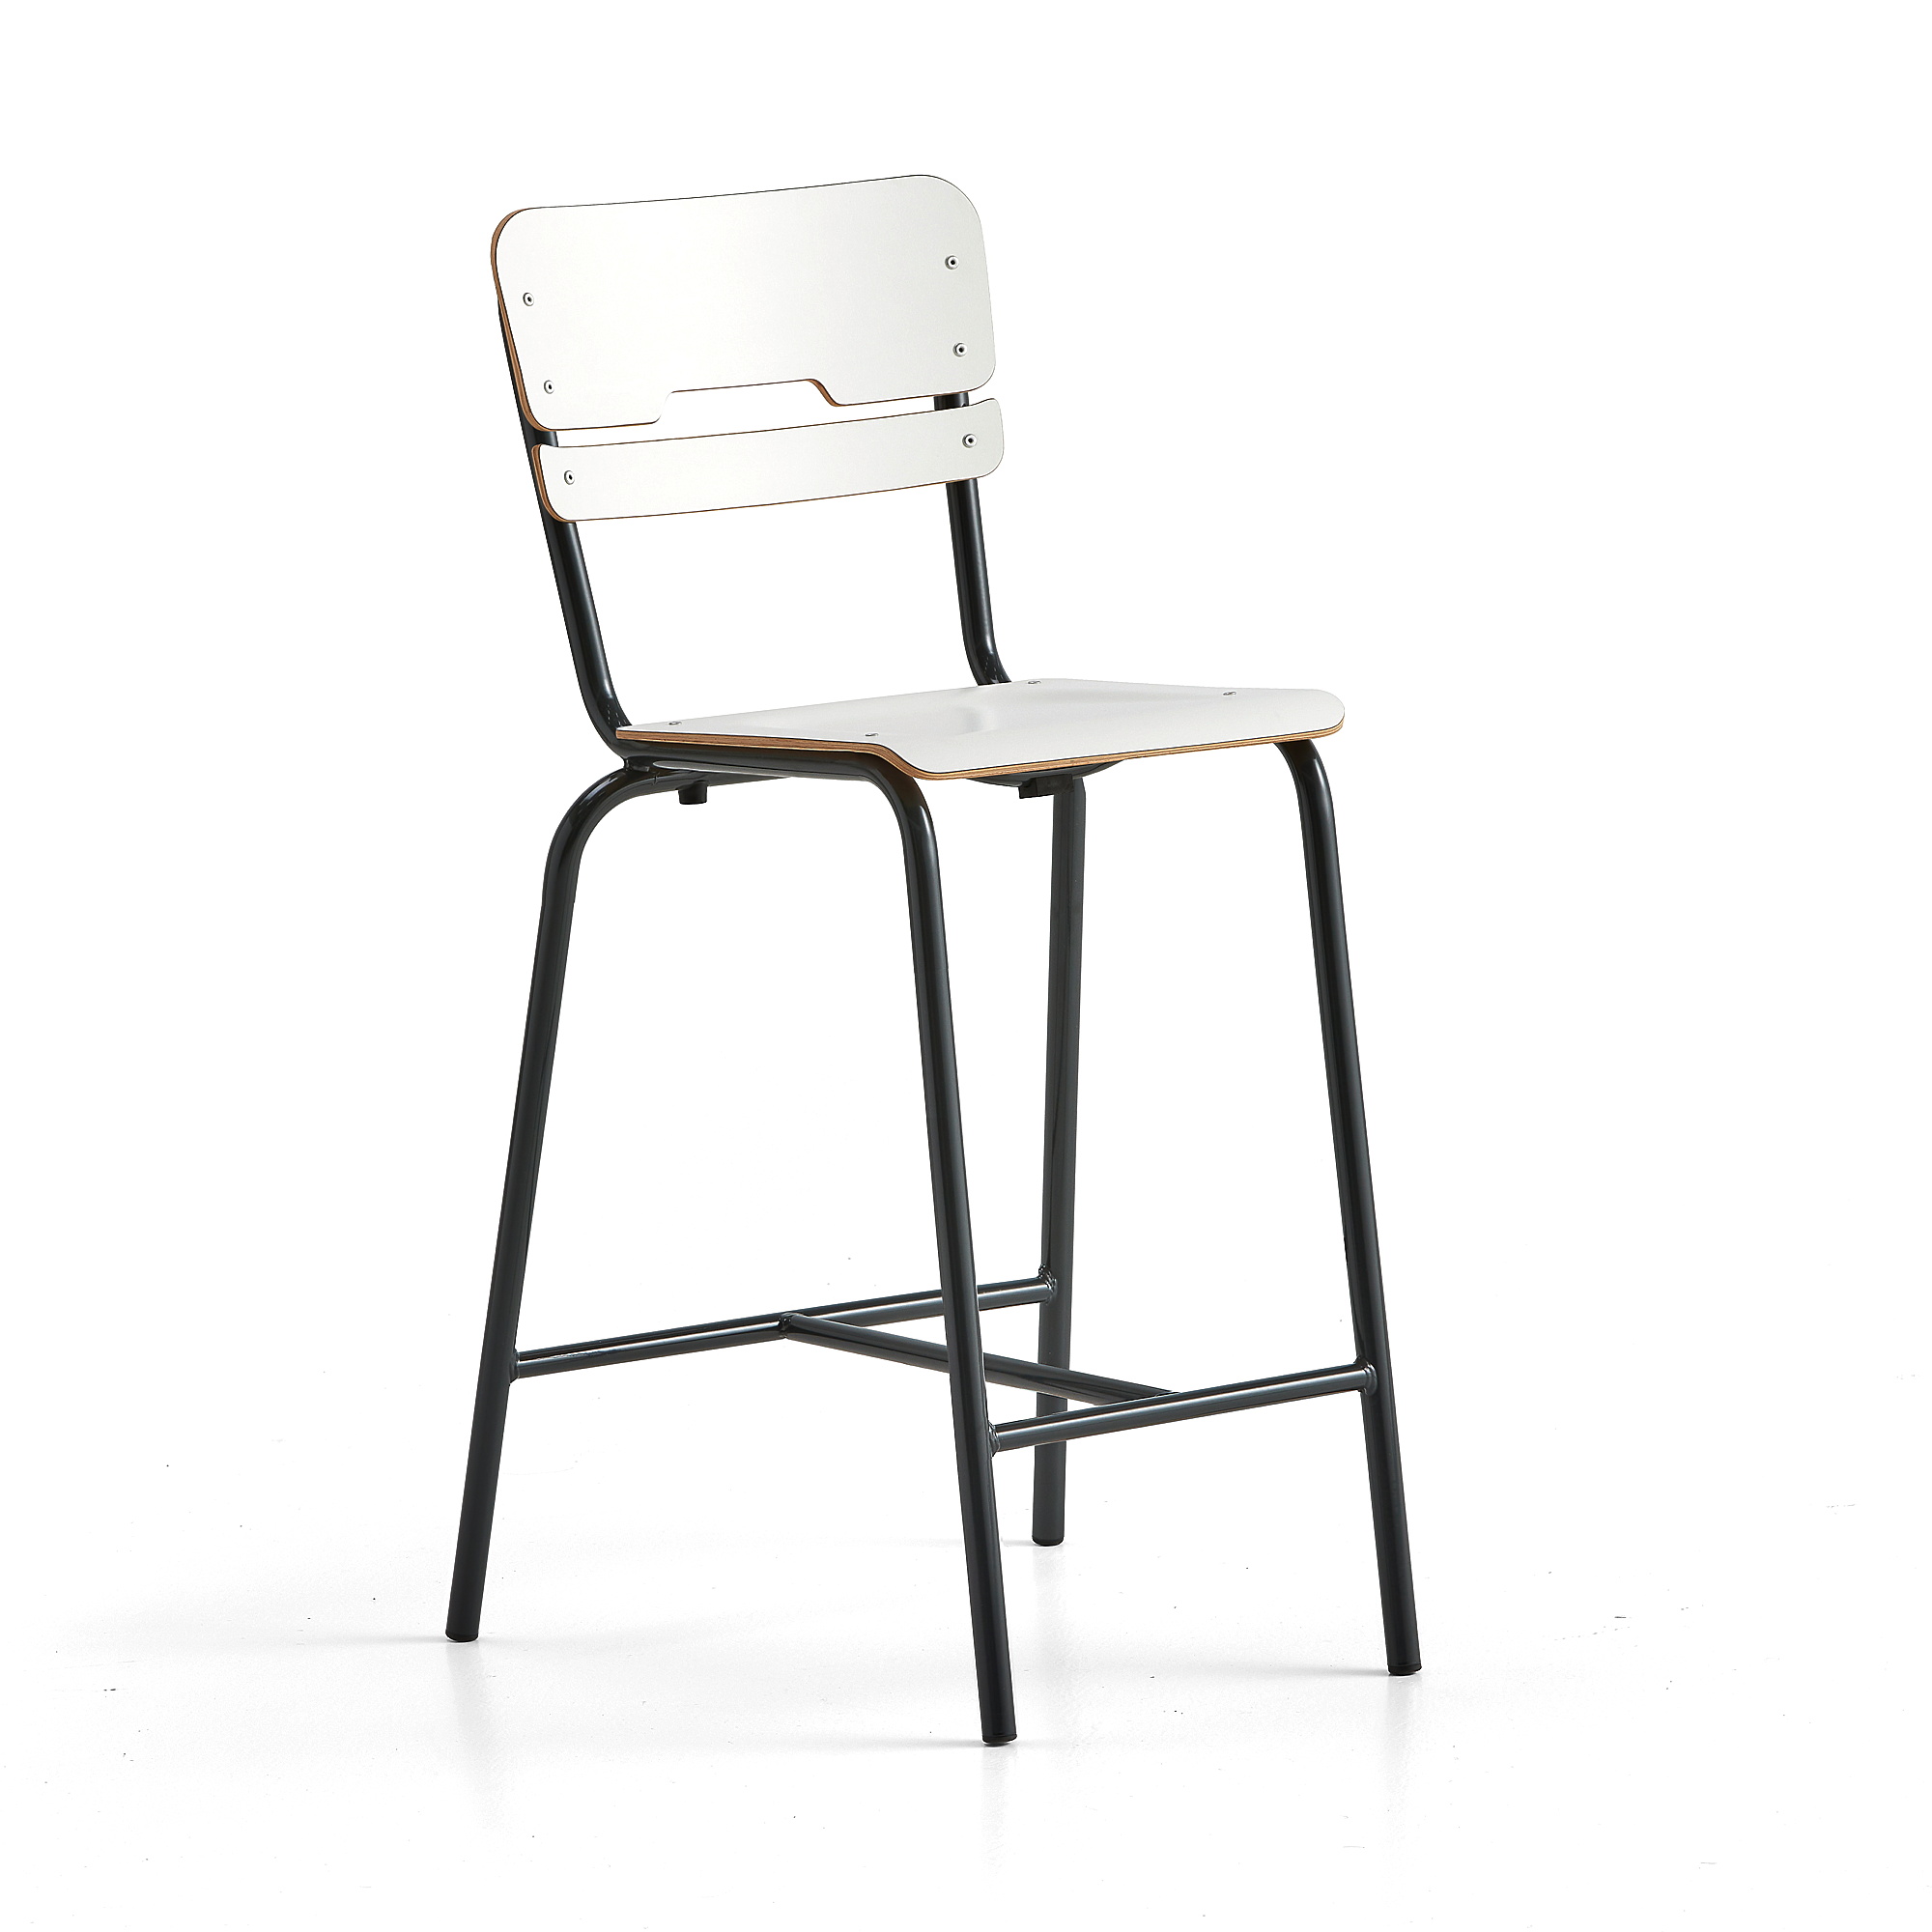 Školní židle SCIENTIA, sedák 360x360 mm, výška 650 mm, antracitová/bílá